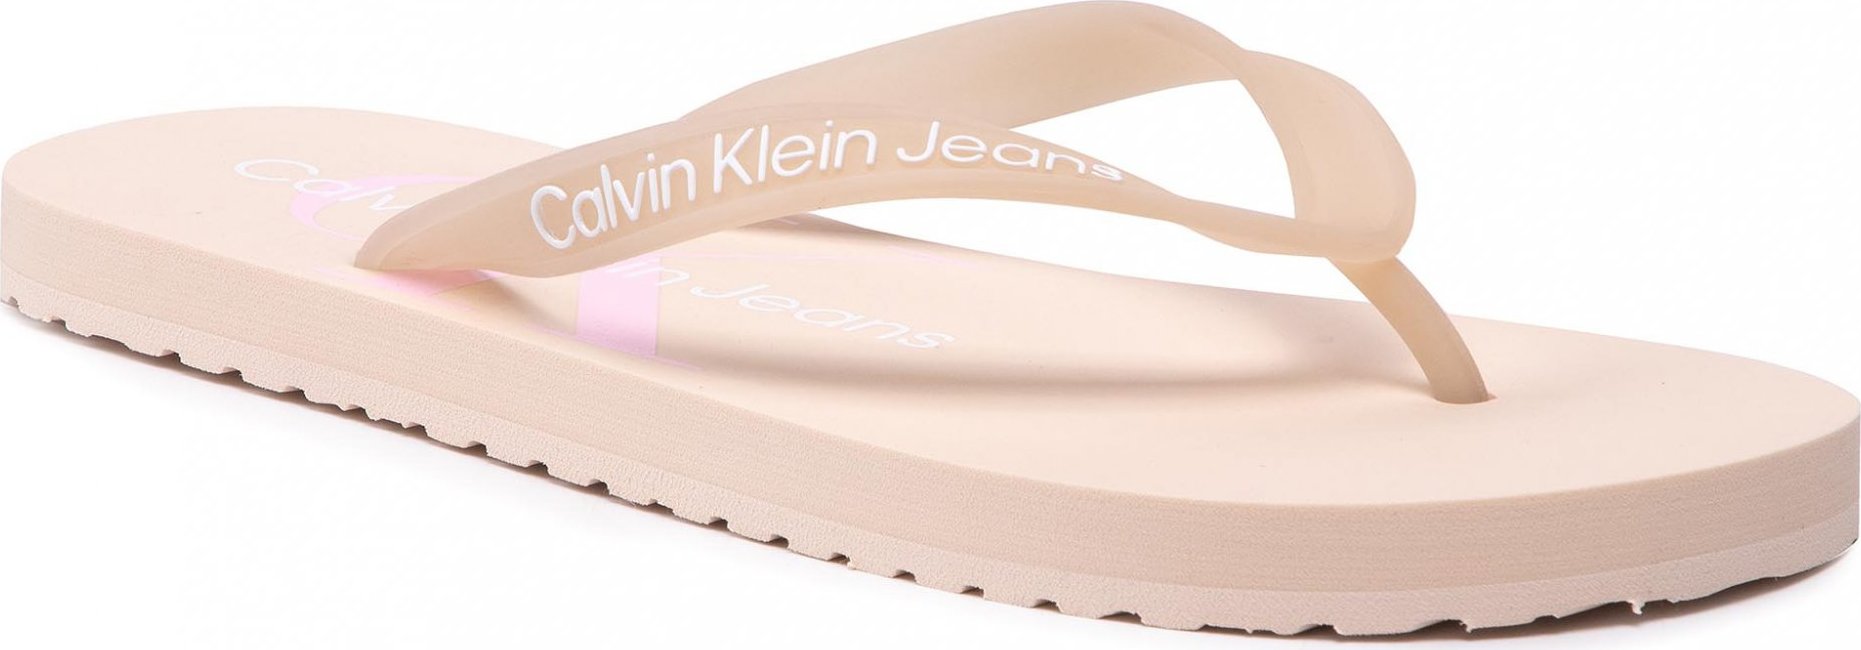 Calvin Klein Jeans Beach Sandal Monogram Tpu YW0YW00098